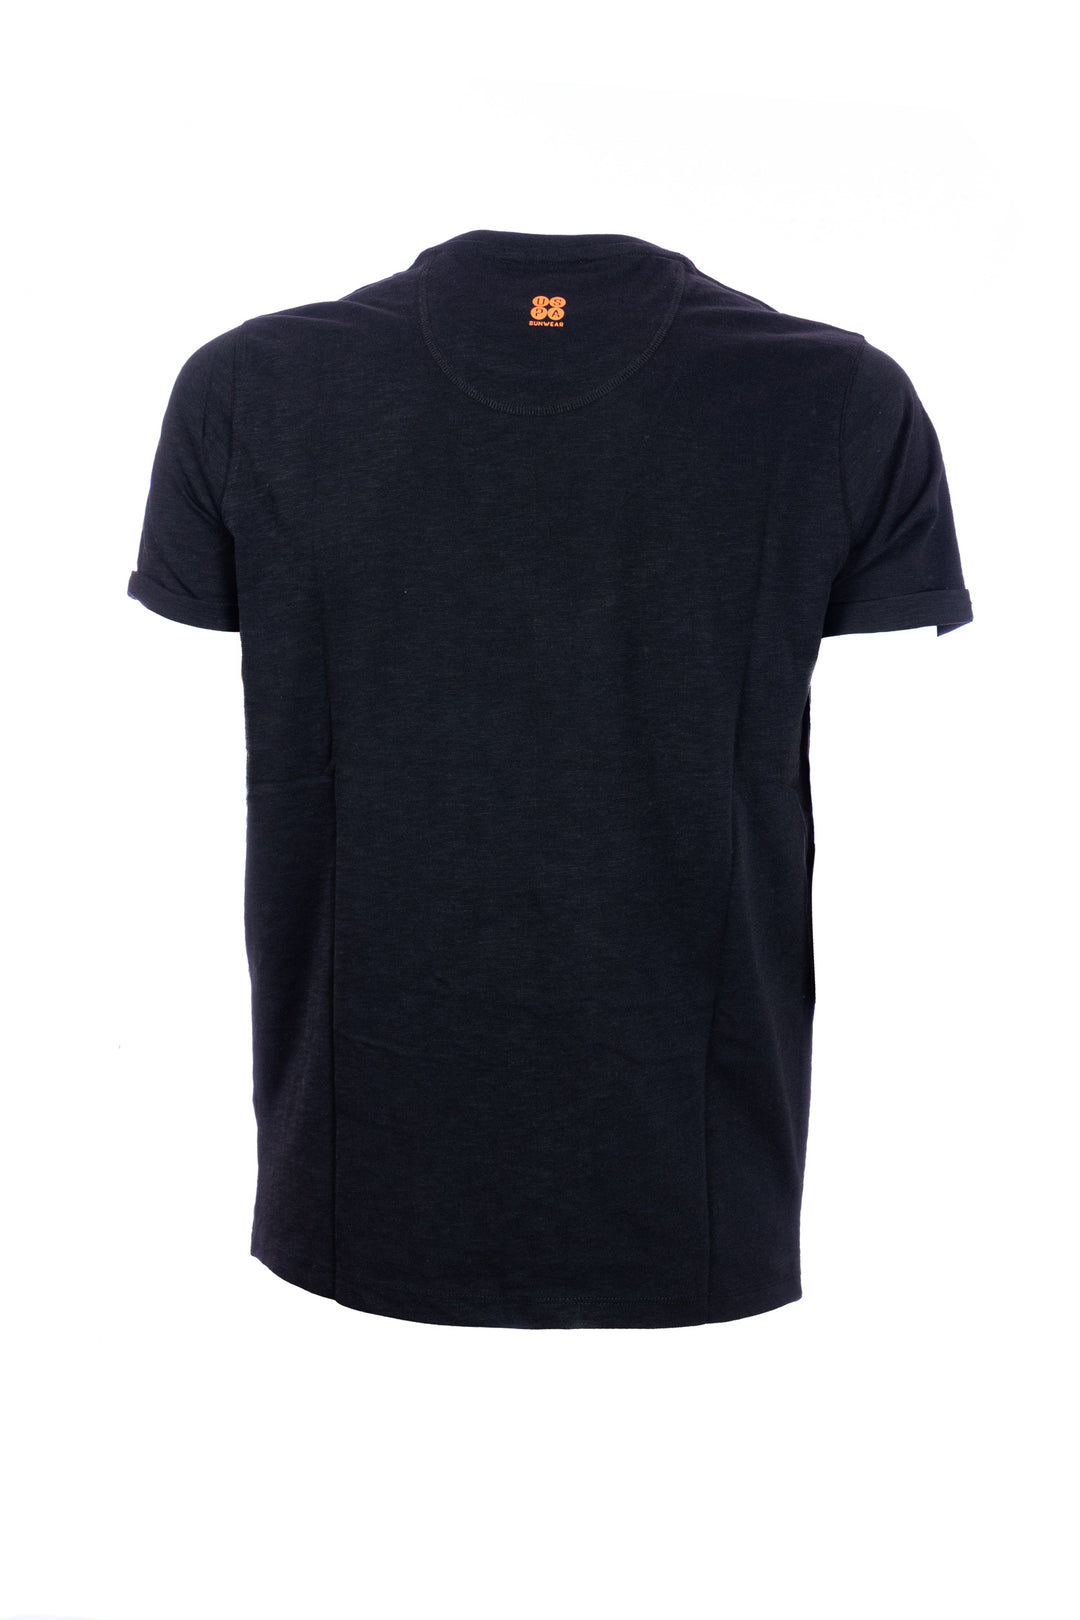 U.S. POLO ASSN. BEACHWEAR T-shirt nera in cotone con logo ricamato e maniche con risvolto - Mancinelli 1954